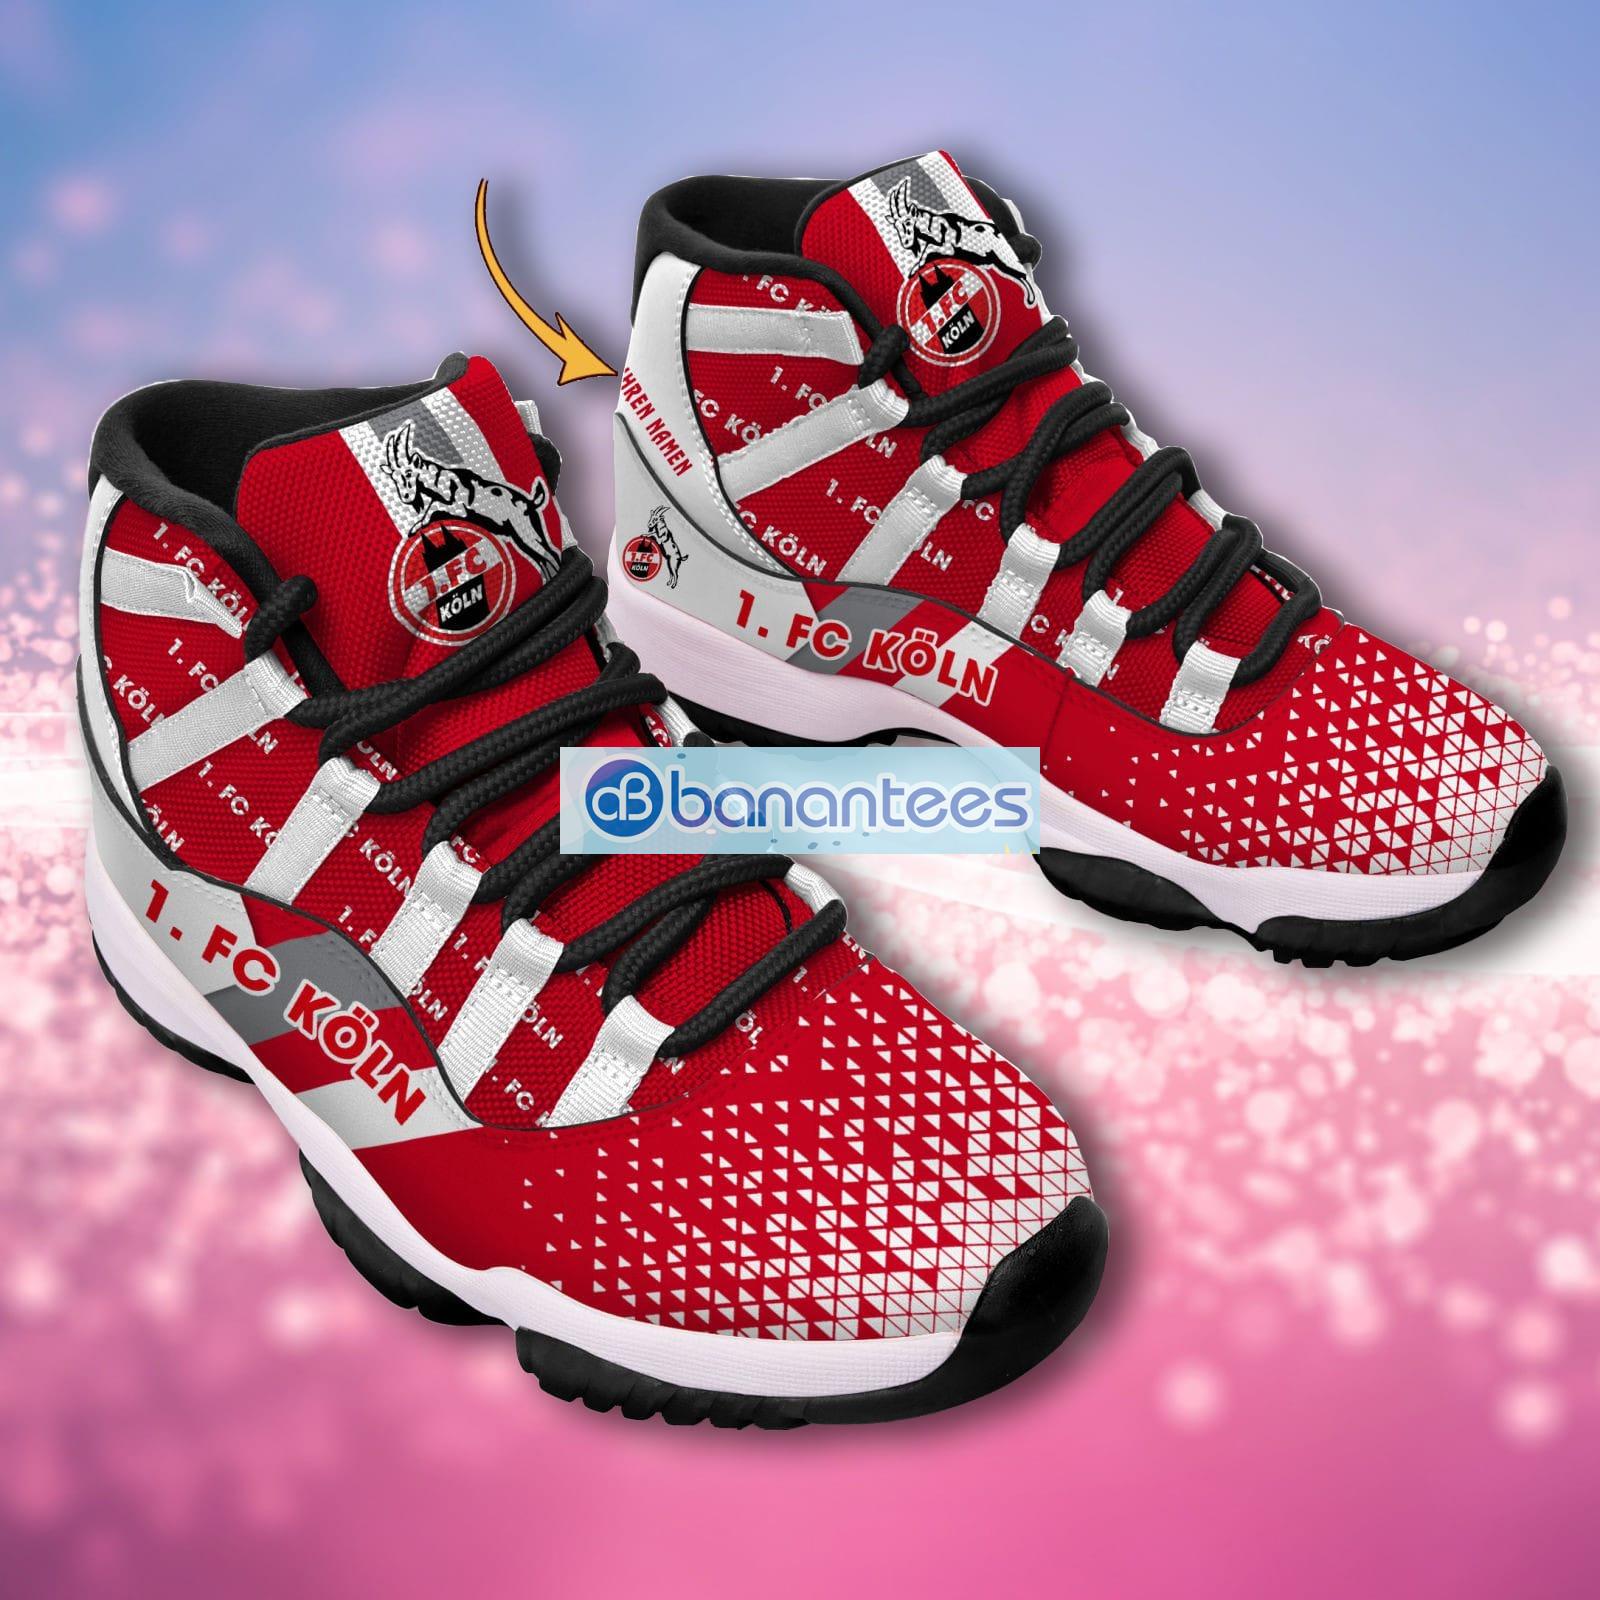 1. FC Koln Bundesliga Logo Custom Name Air Jordan 11 Sneakers - Banantees